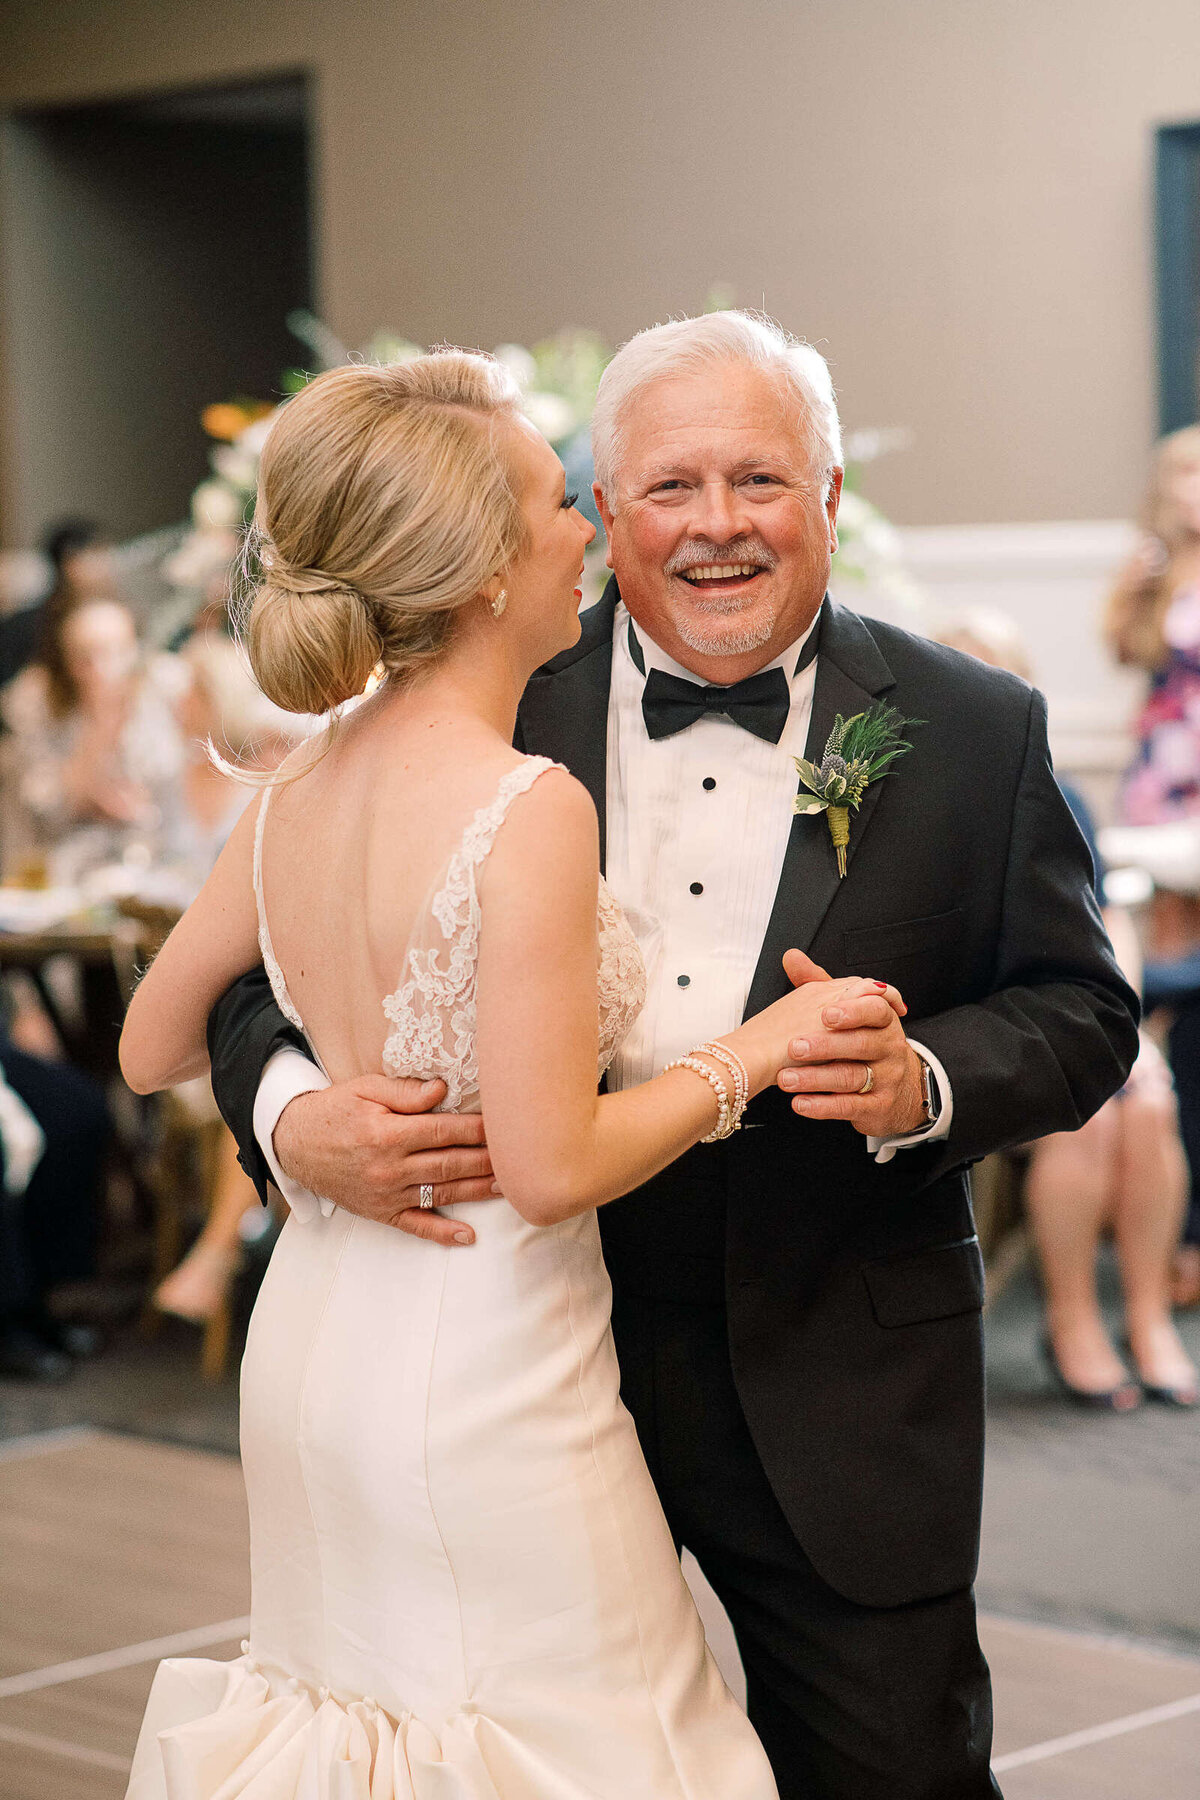 Bride's father dances with bride at wedding reception in Boerne, Texas